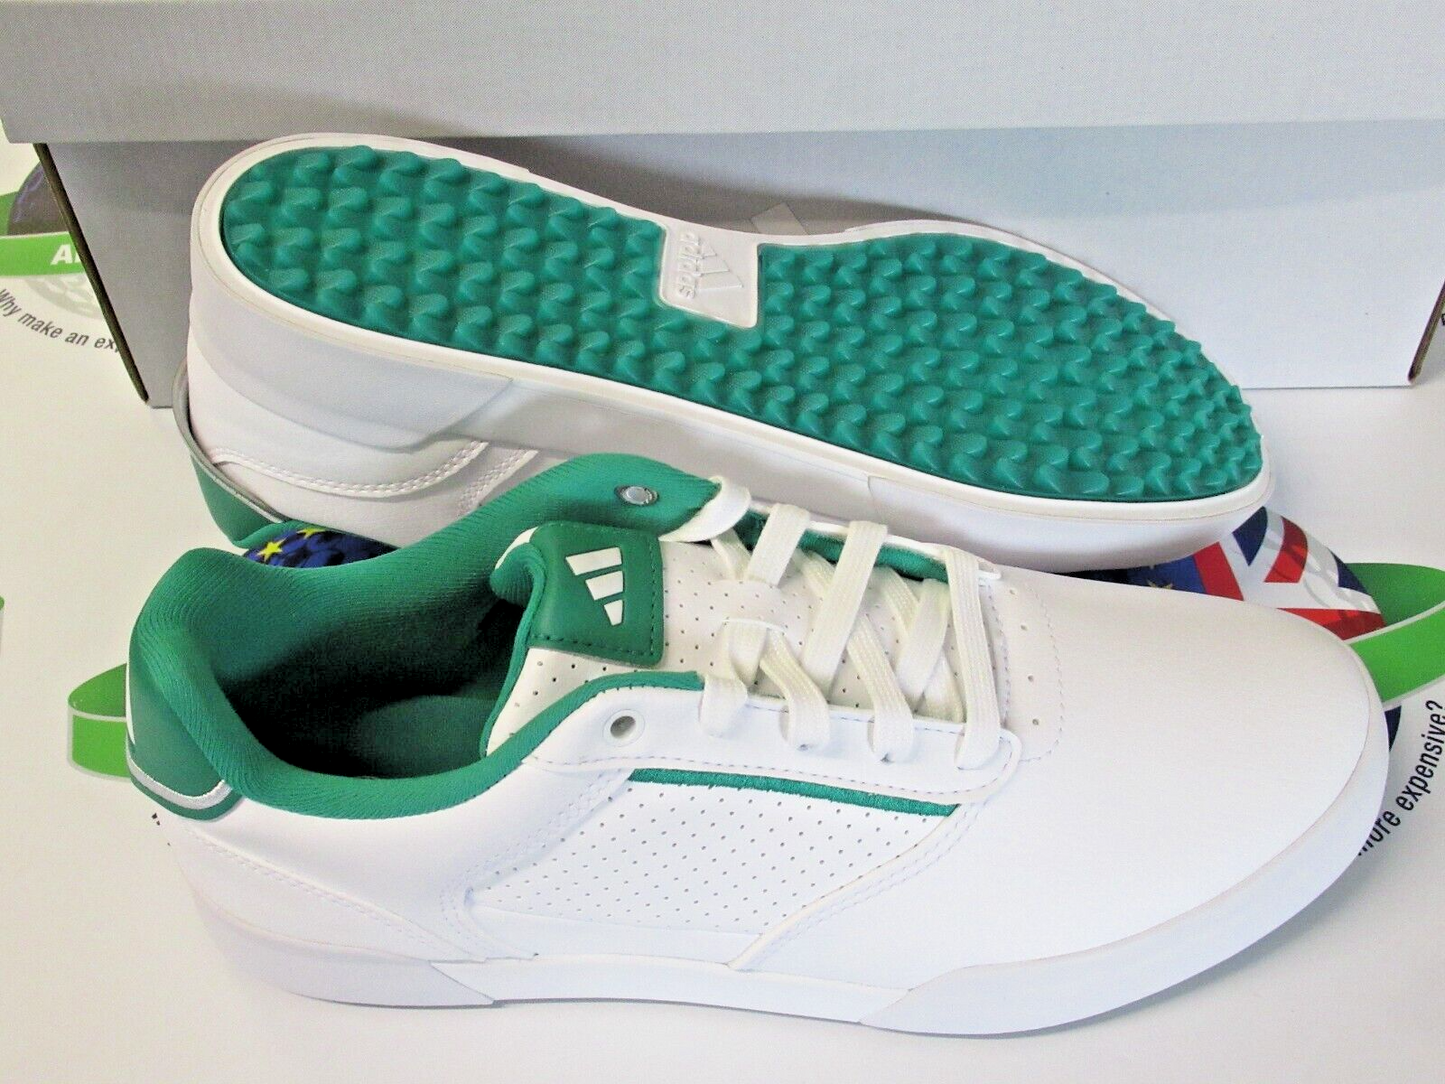 adidas retrocross white/green waterproof golf shoes uk size 8 wide